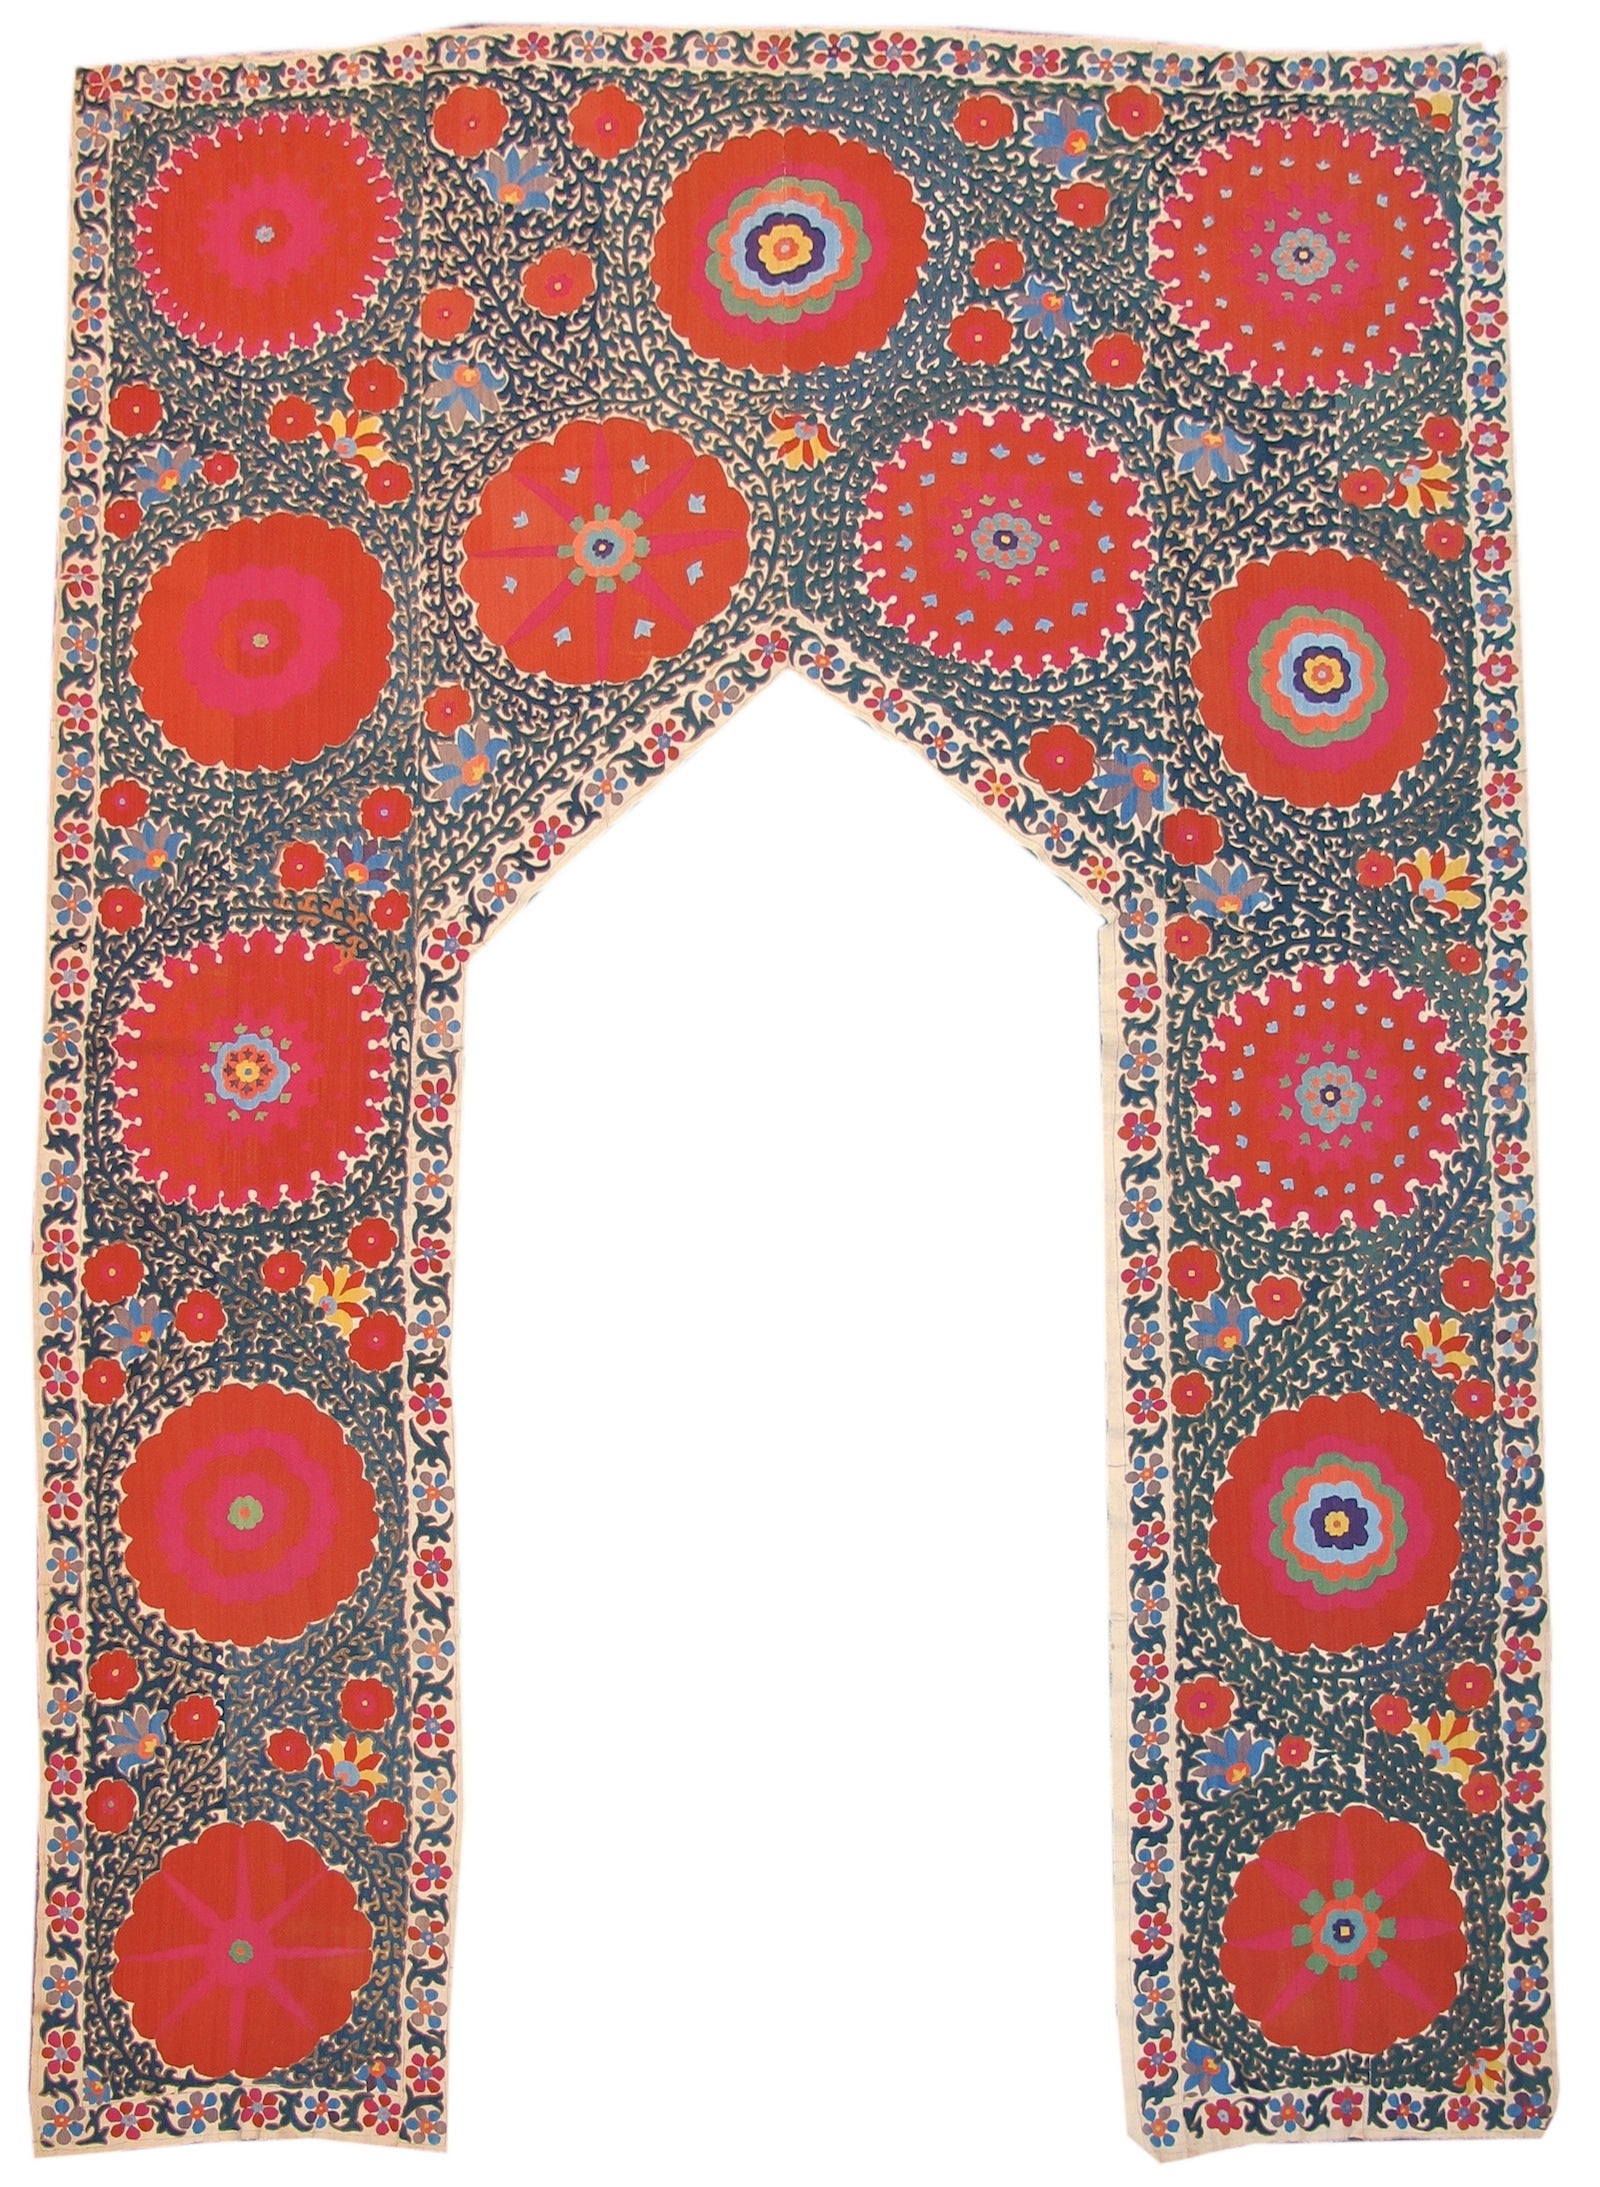 Uzbek Embroidery Door Surround